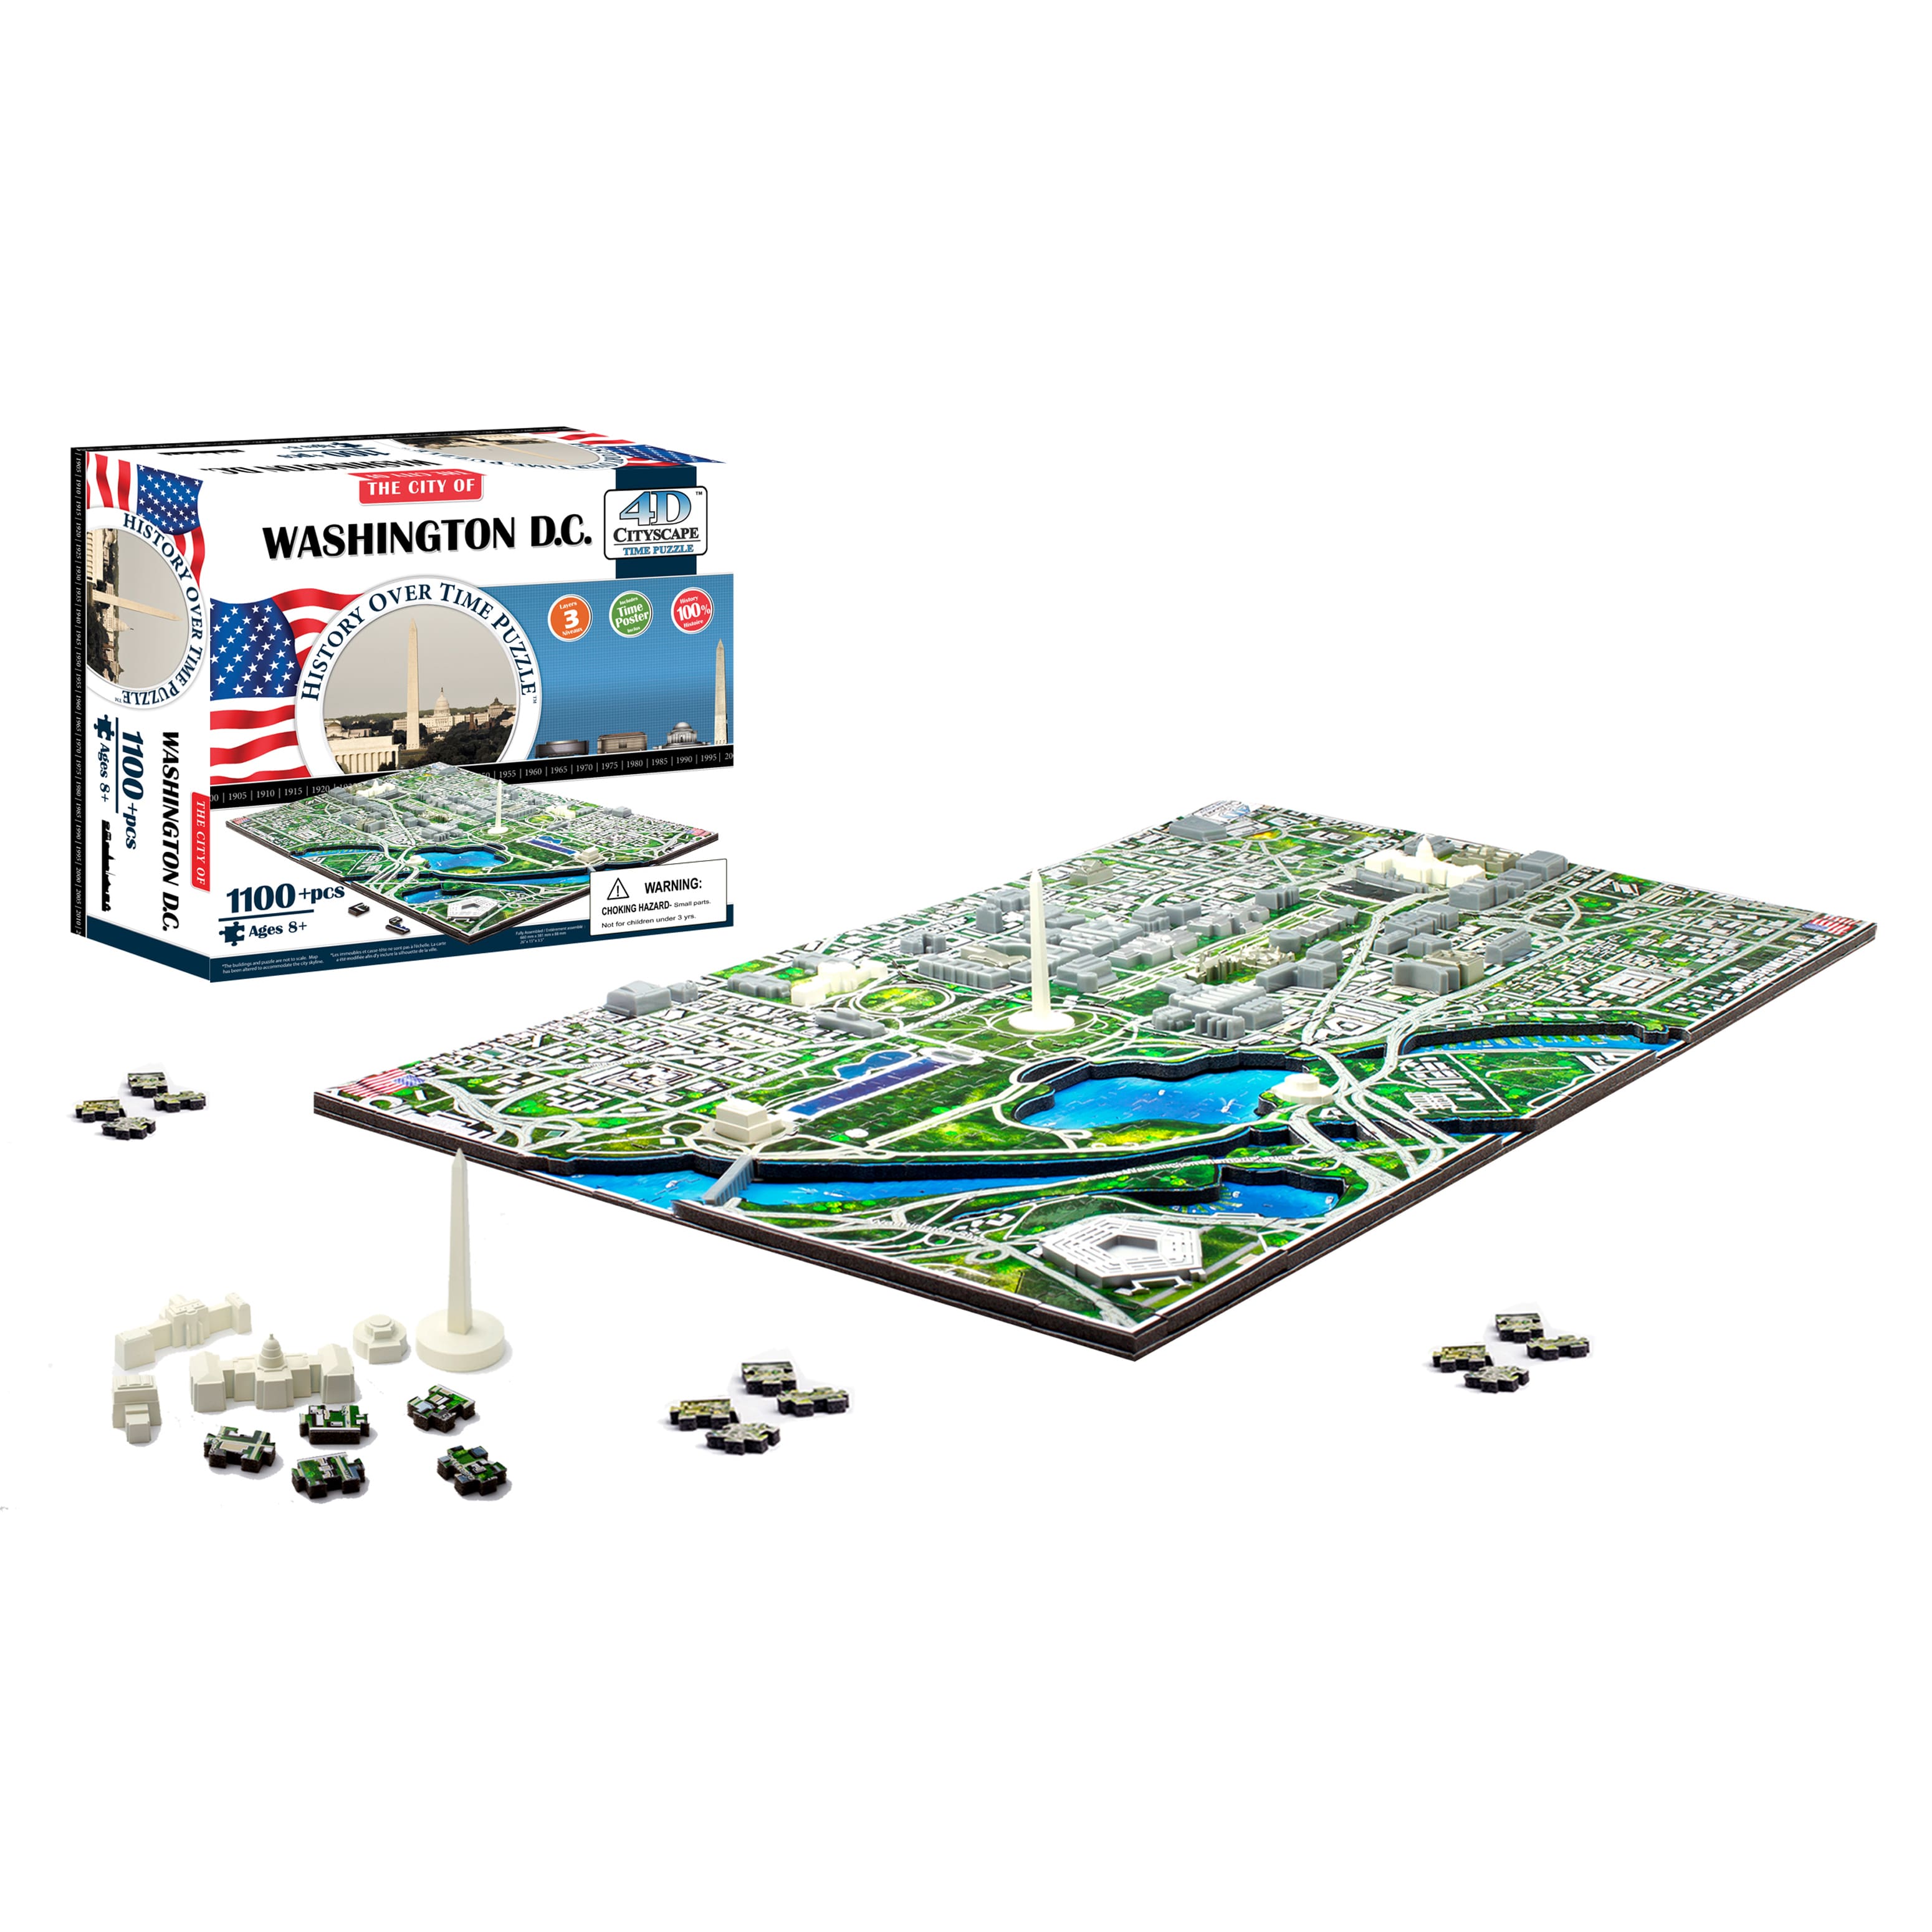 4D Cityscape 40018 Washington DC USA Puzzle : 4D Cityscape Inc